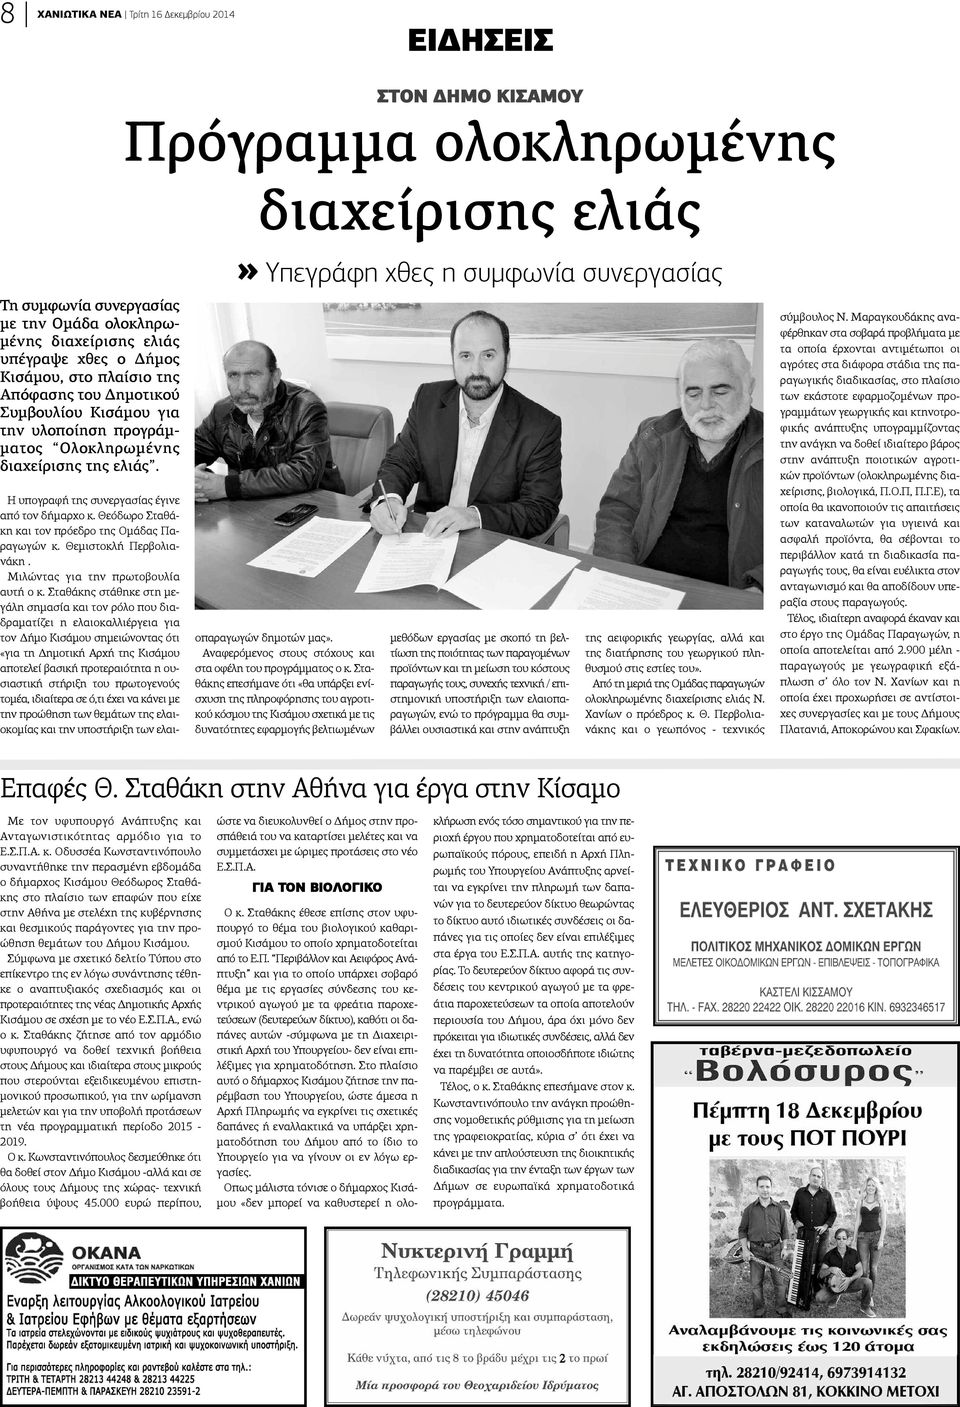 Η υπογραφή της συνεργασίας έγινε από τον δήμαρχο κ. Θεόδωρο Σταθάκη και τον πρόεδρο της Ομάδας Παραγωγών κ. Θεμιστοκλή Περβολιαάκη. Μιλώντας για την πρωτοβουλία υτή ο κ.